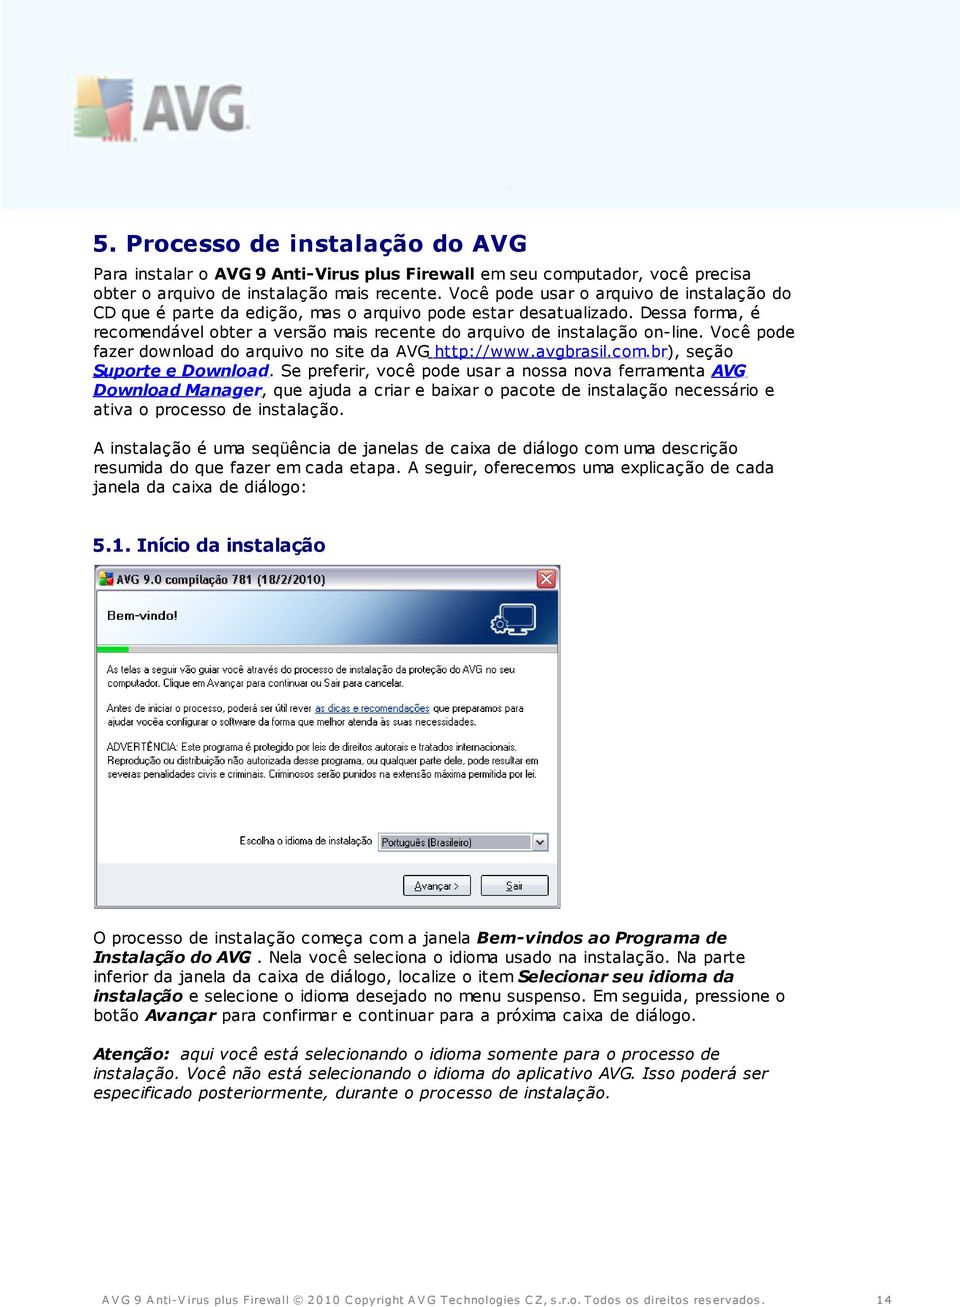 Você pode fazer download do arquivo no site da AVG http://www.avgbrasil.com.br), seção Suporte e Download.